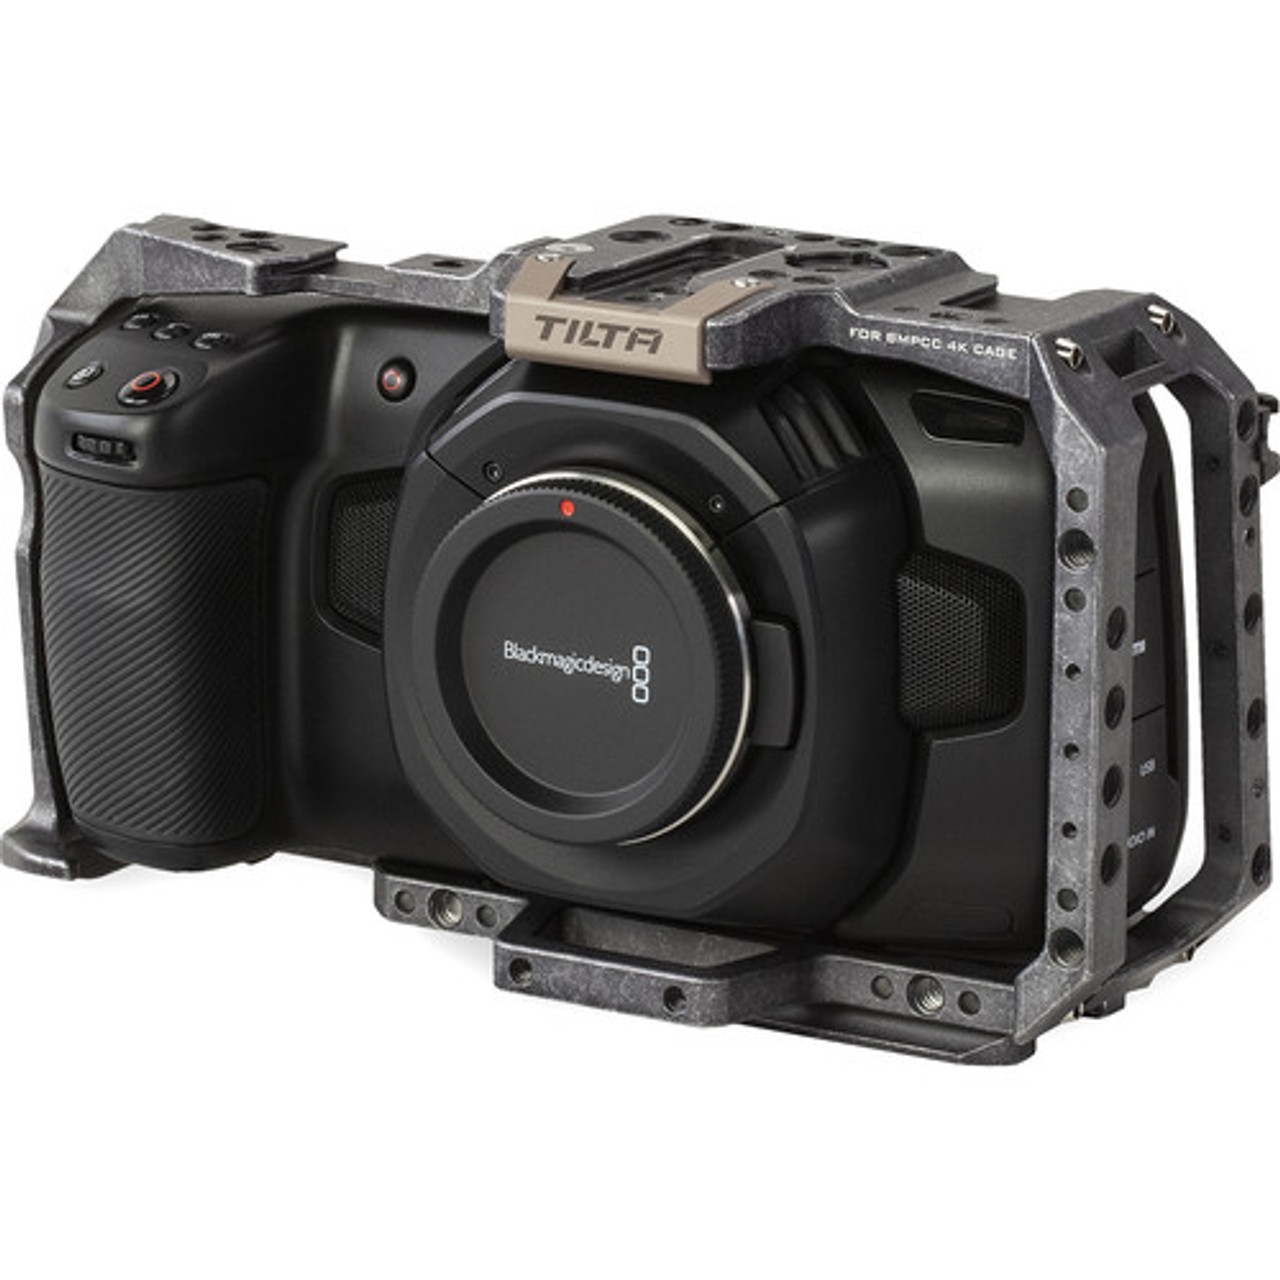 オンラインストア最安 Blackmagic Pocket Cinema Camera 4K /No.4 デジタルカメラ